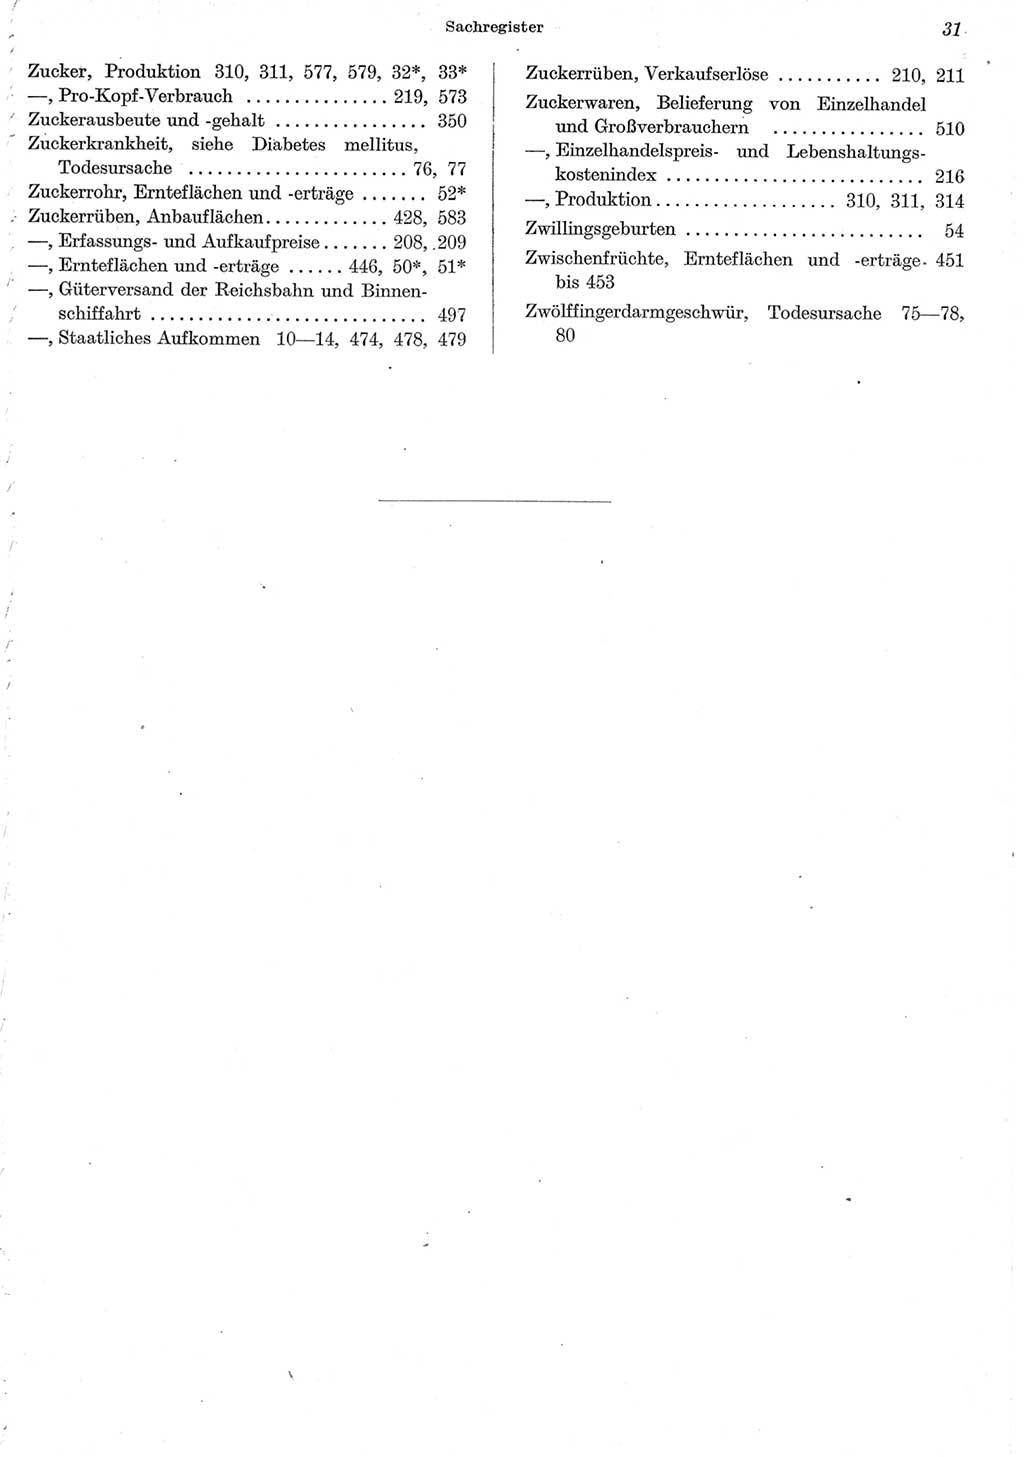 Statistisches Jahrbuch der Deutschen Demokratischen Republik (DDR) 1962, Seite 31 (Stat. Jb. DDR 1962, S. 31)